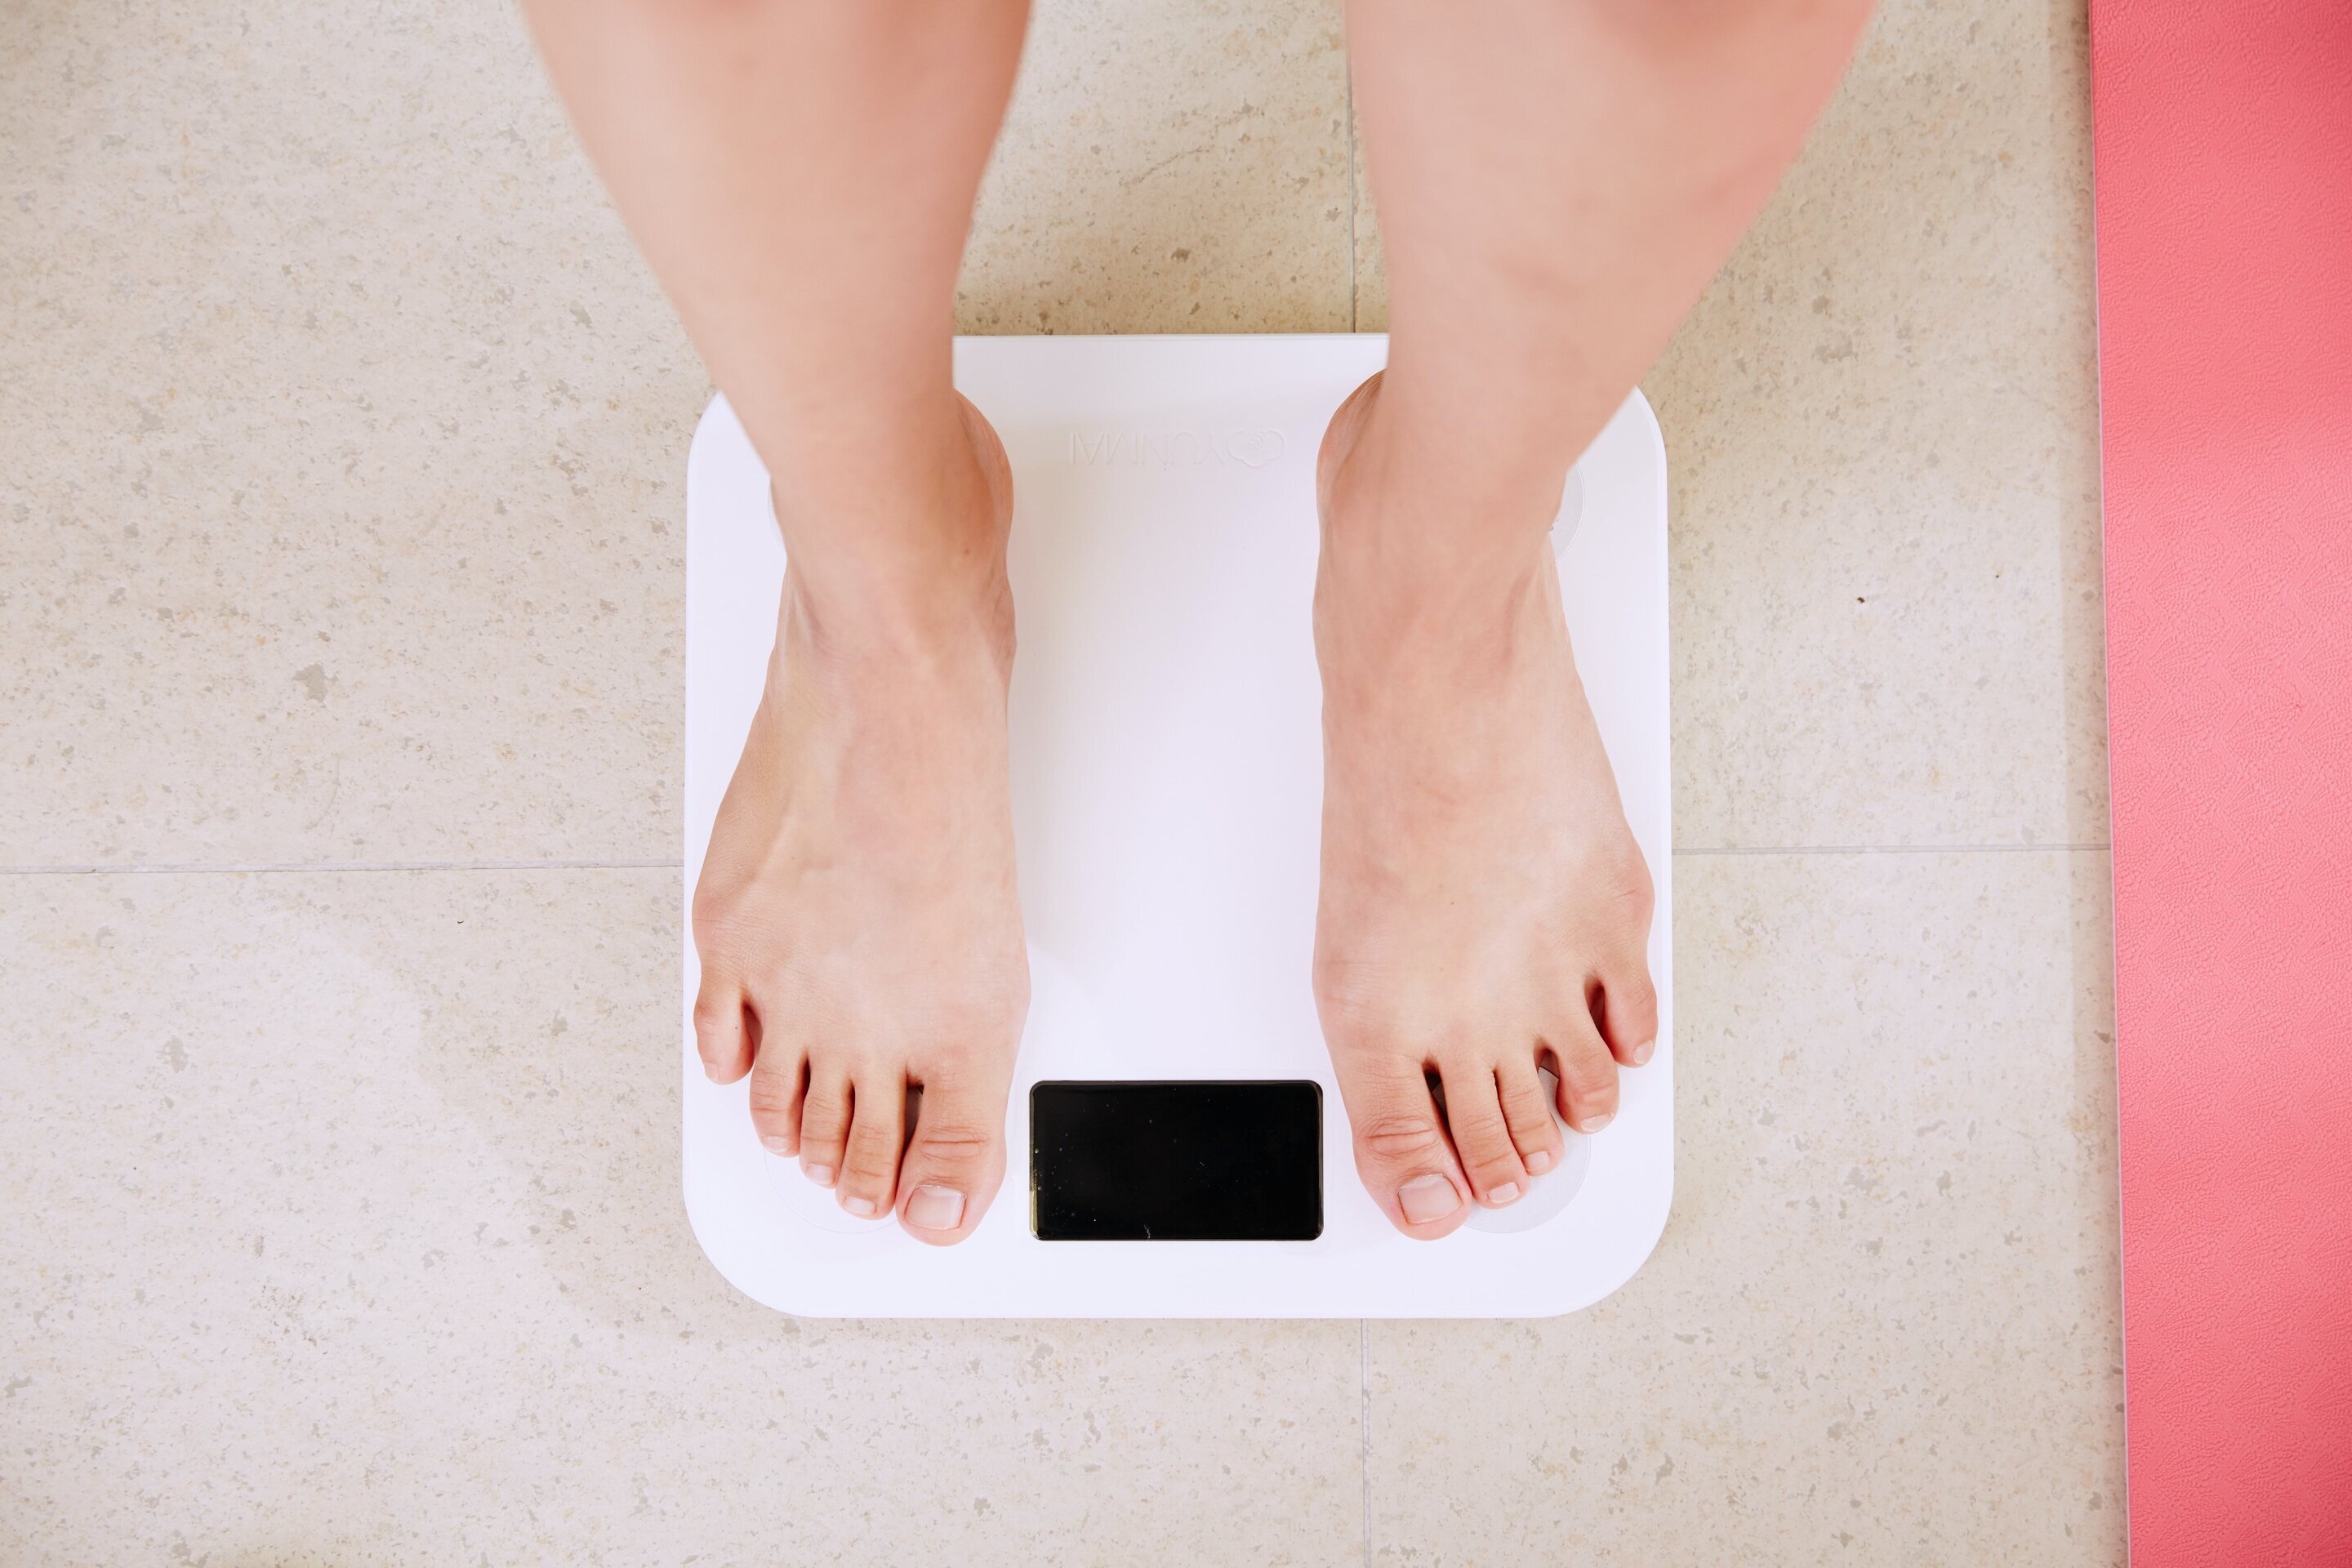 Учёный объяснил, как влияет на здоровье снижение веса всего на 5−10% от всей массы тела